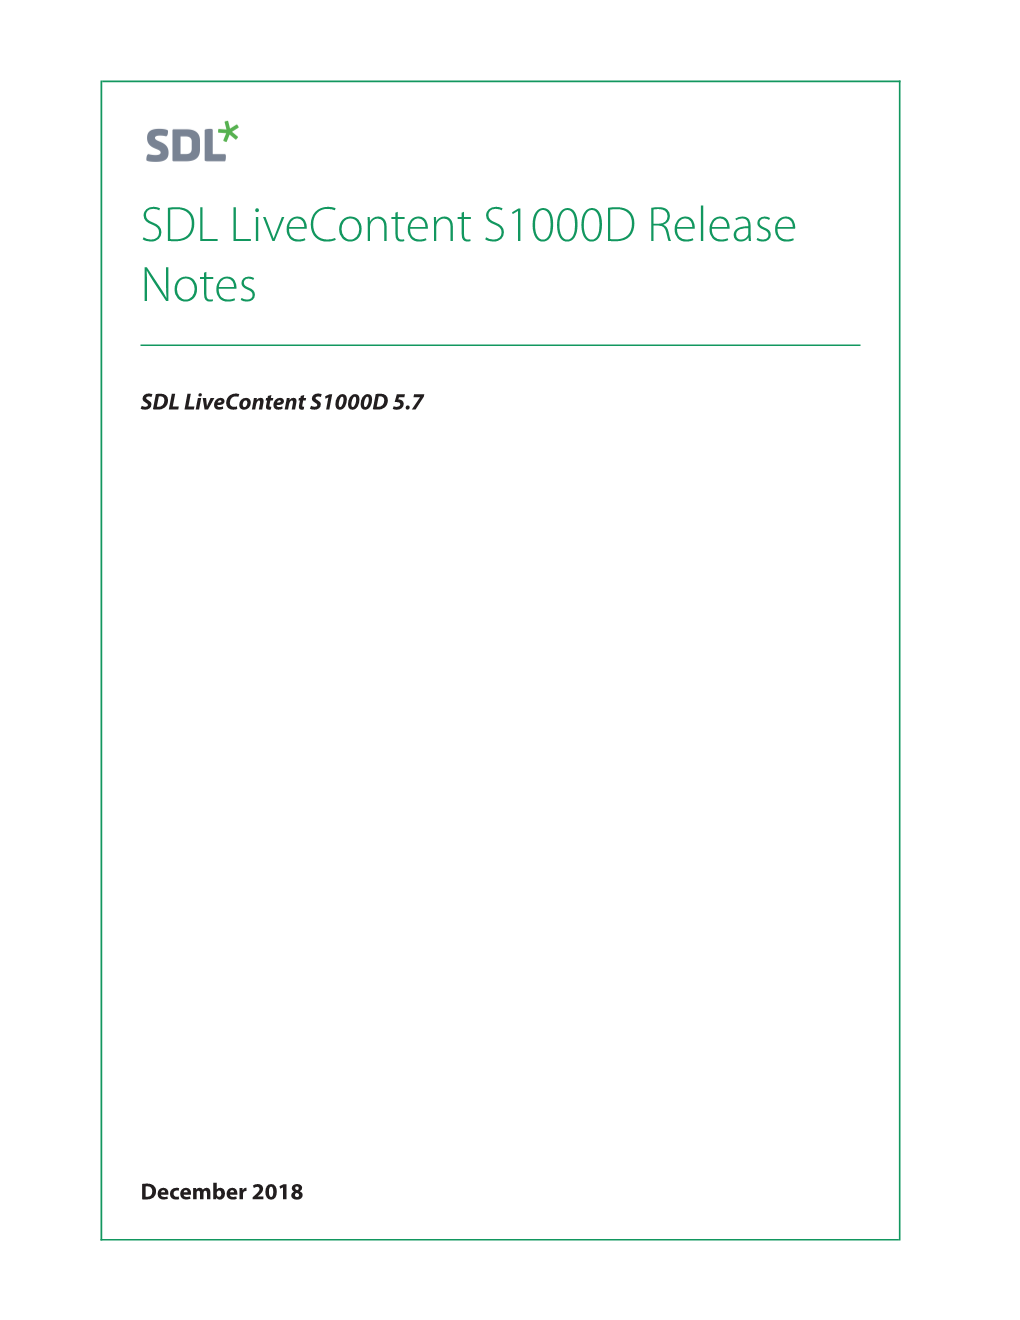 SDL Livecontent S1000D 5.7 Release Notes